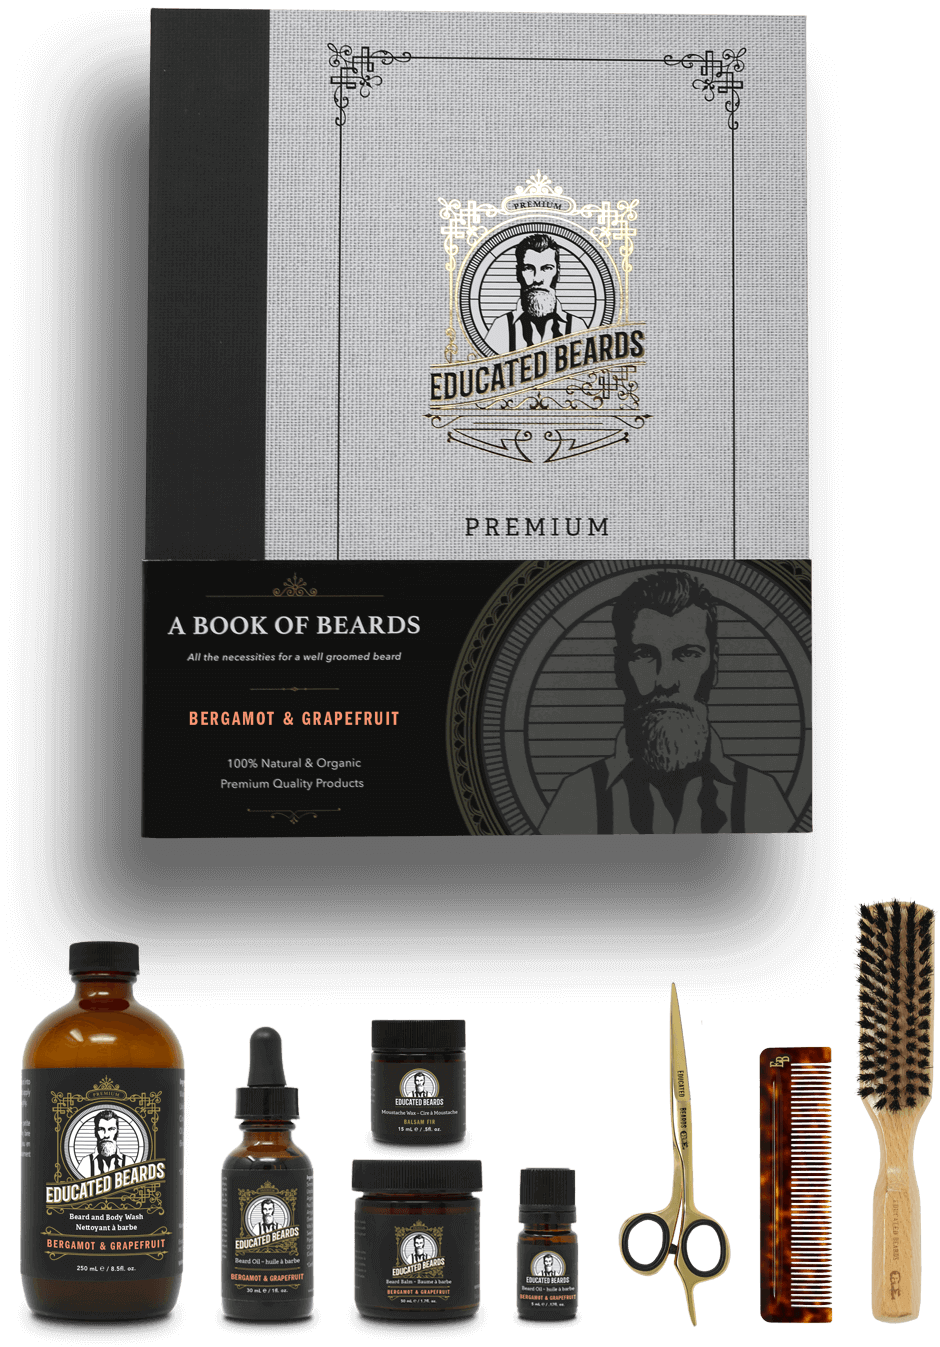 Bergamot & Grapefruit Book of Beards /  Premium Beard Kit 8 items | Educated Beards